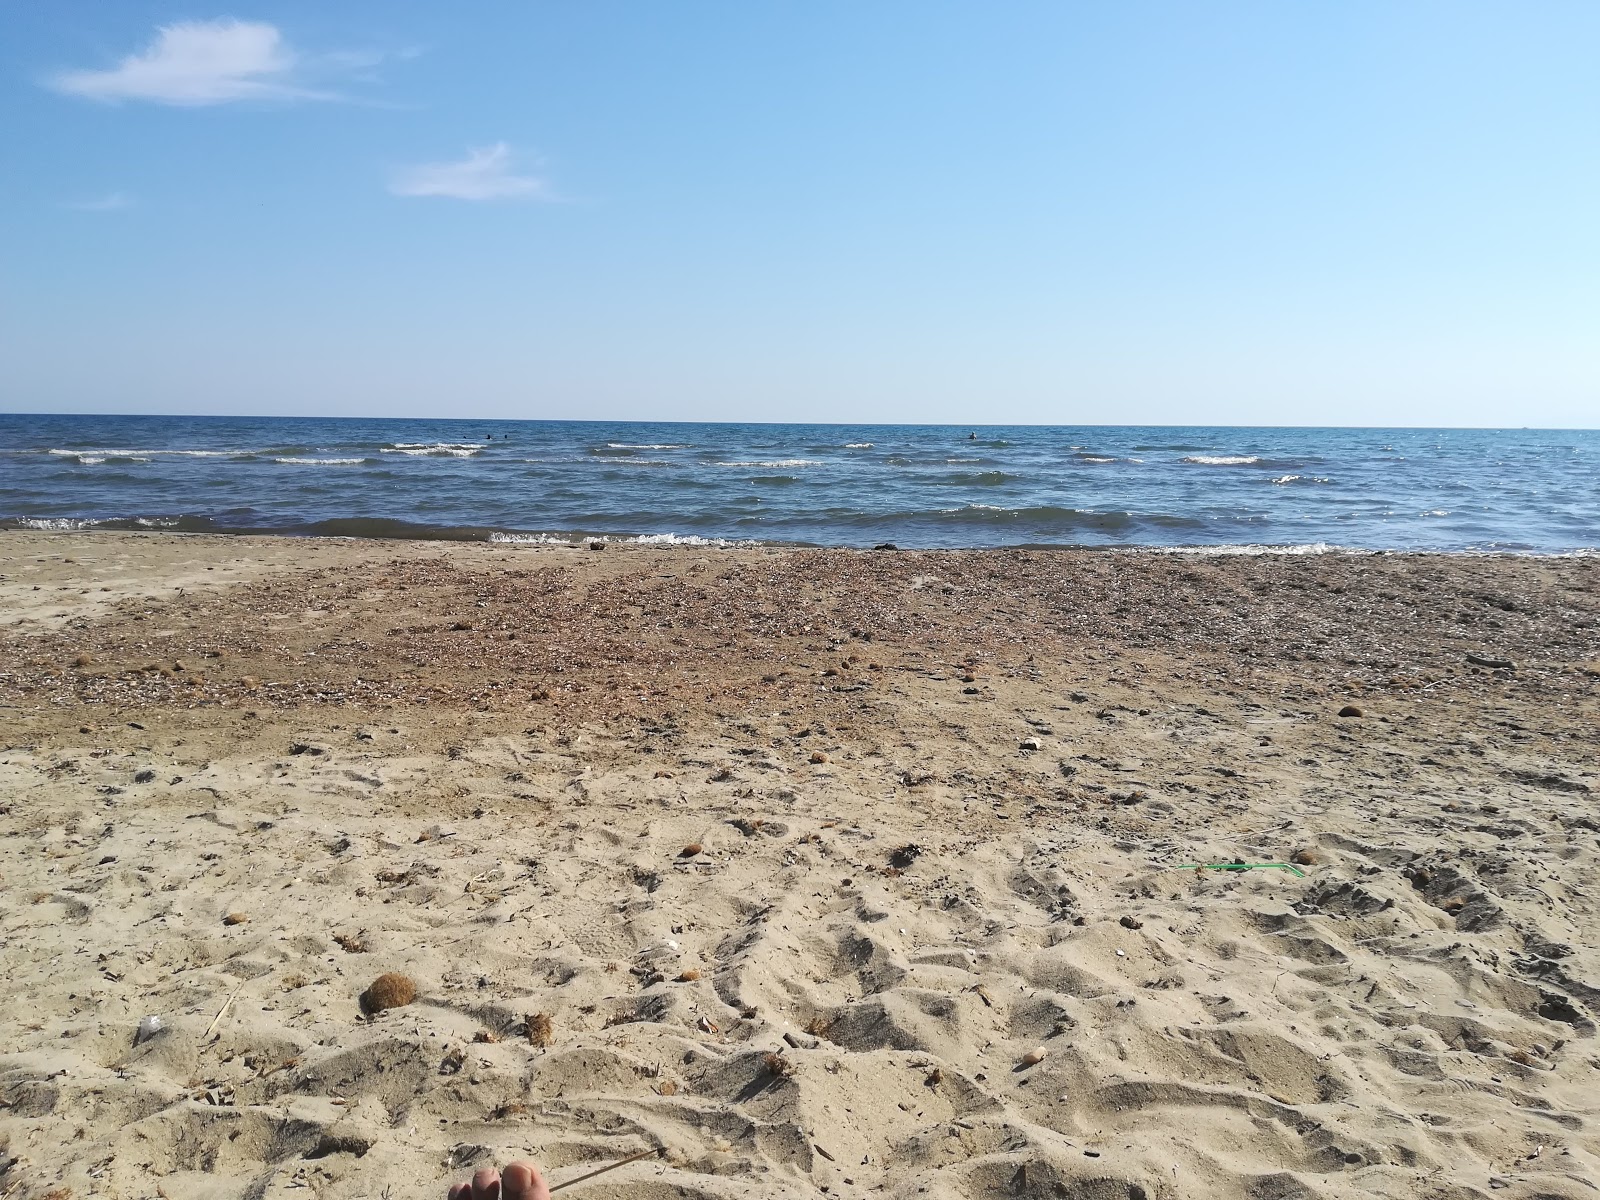 Imeros beach'in fotoğrafı parlak kum yüzey ile